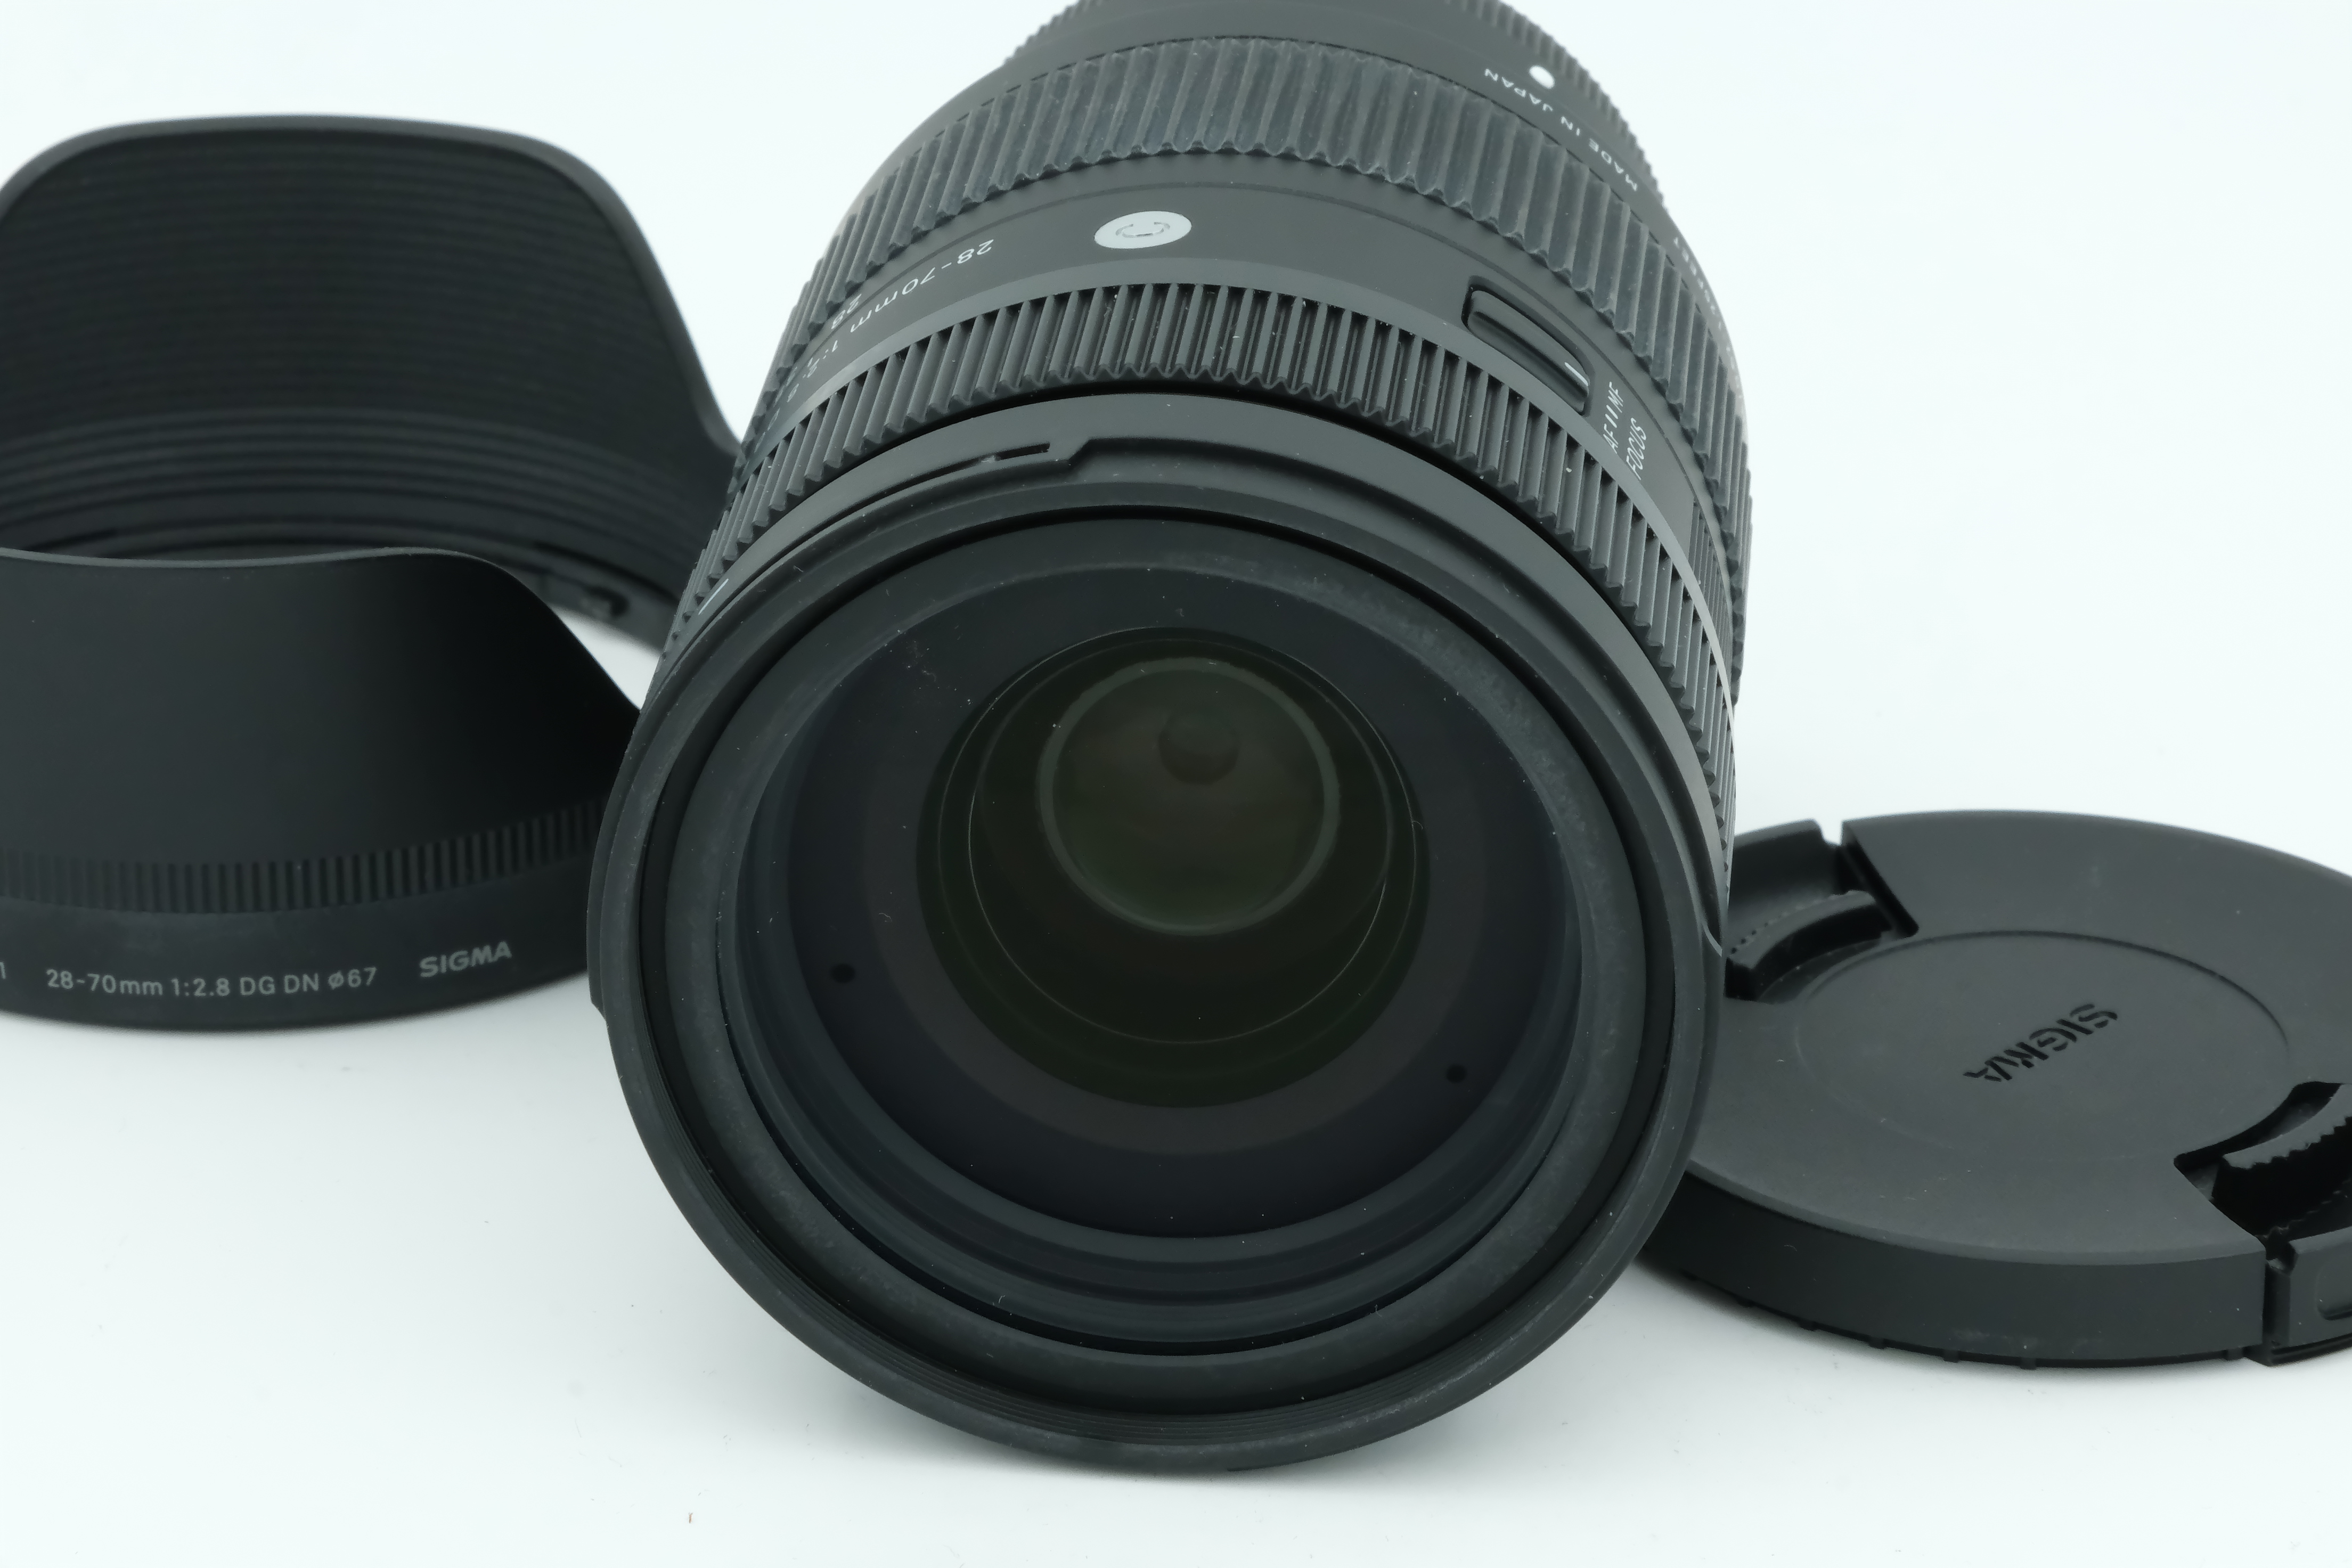 Sigma AF 28-70mm 2,8 DG DN + Sonnenblende für Sony, 6 Monate Garantie Bild 02